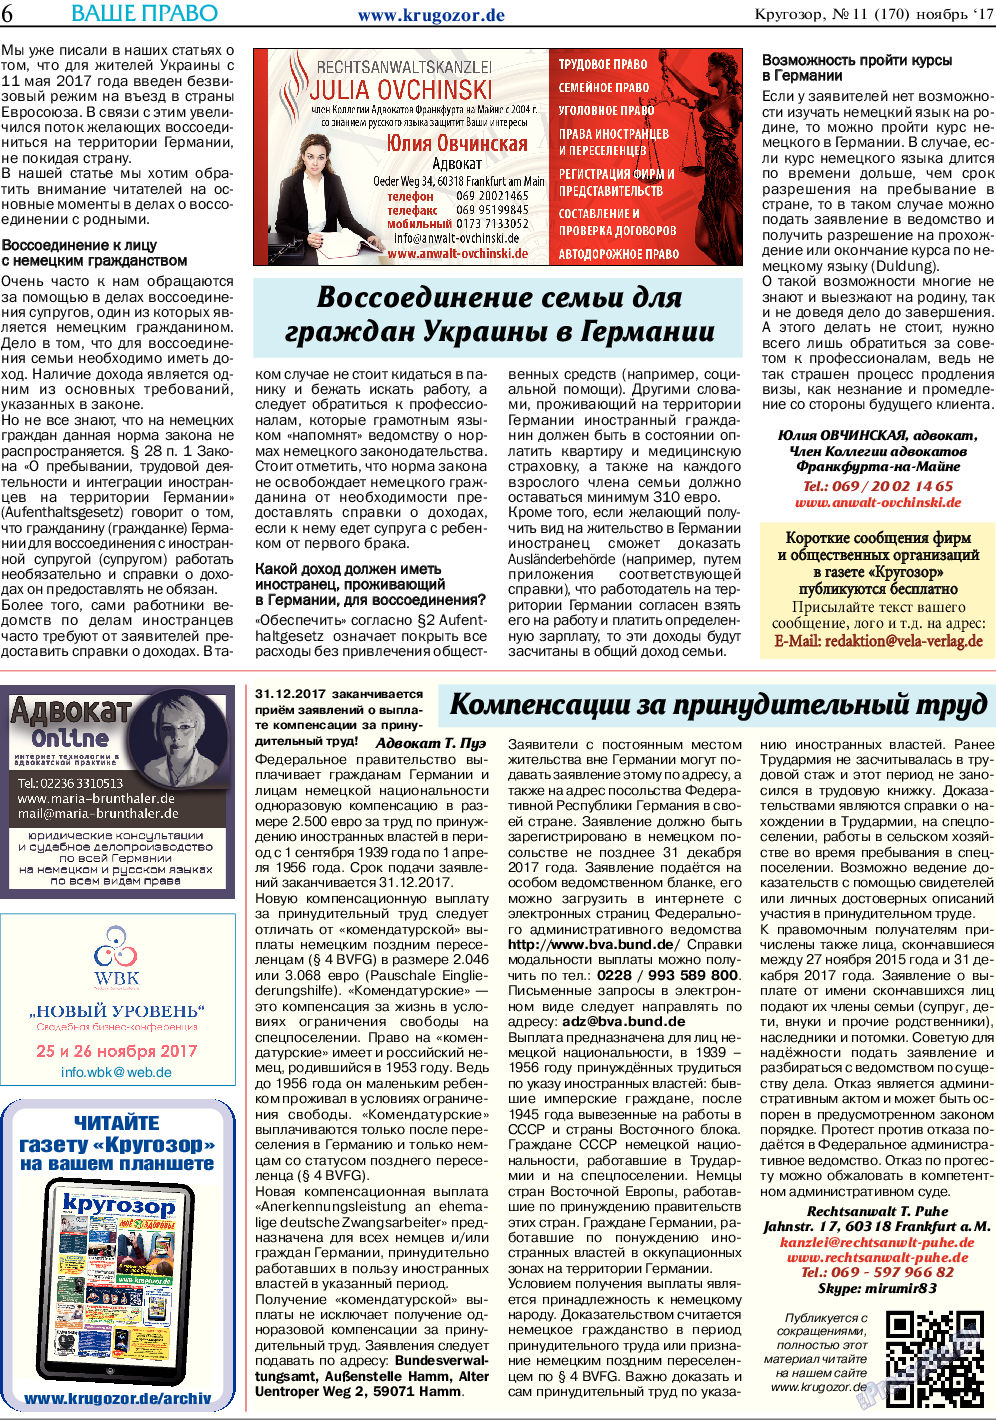 Кругозор, газета. 2017 №11 стр.6